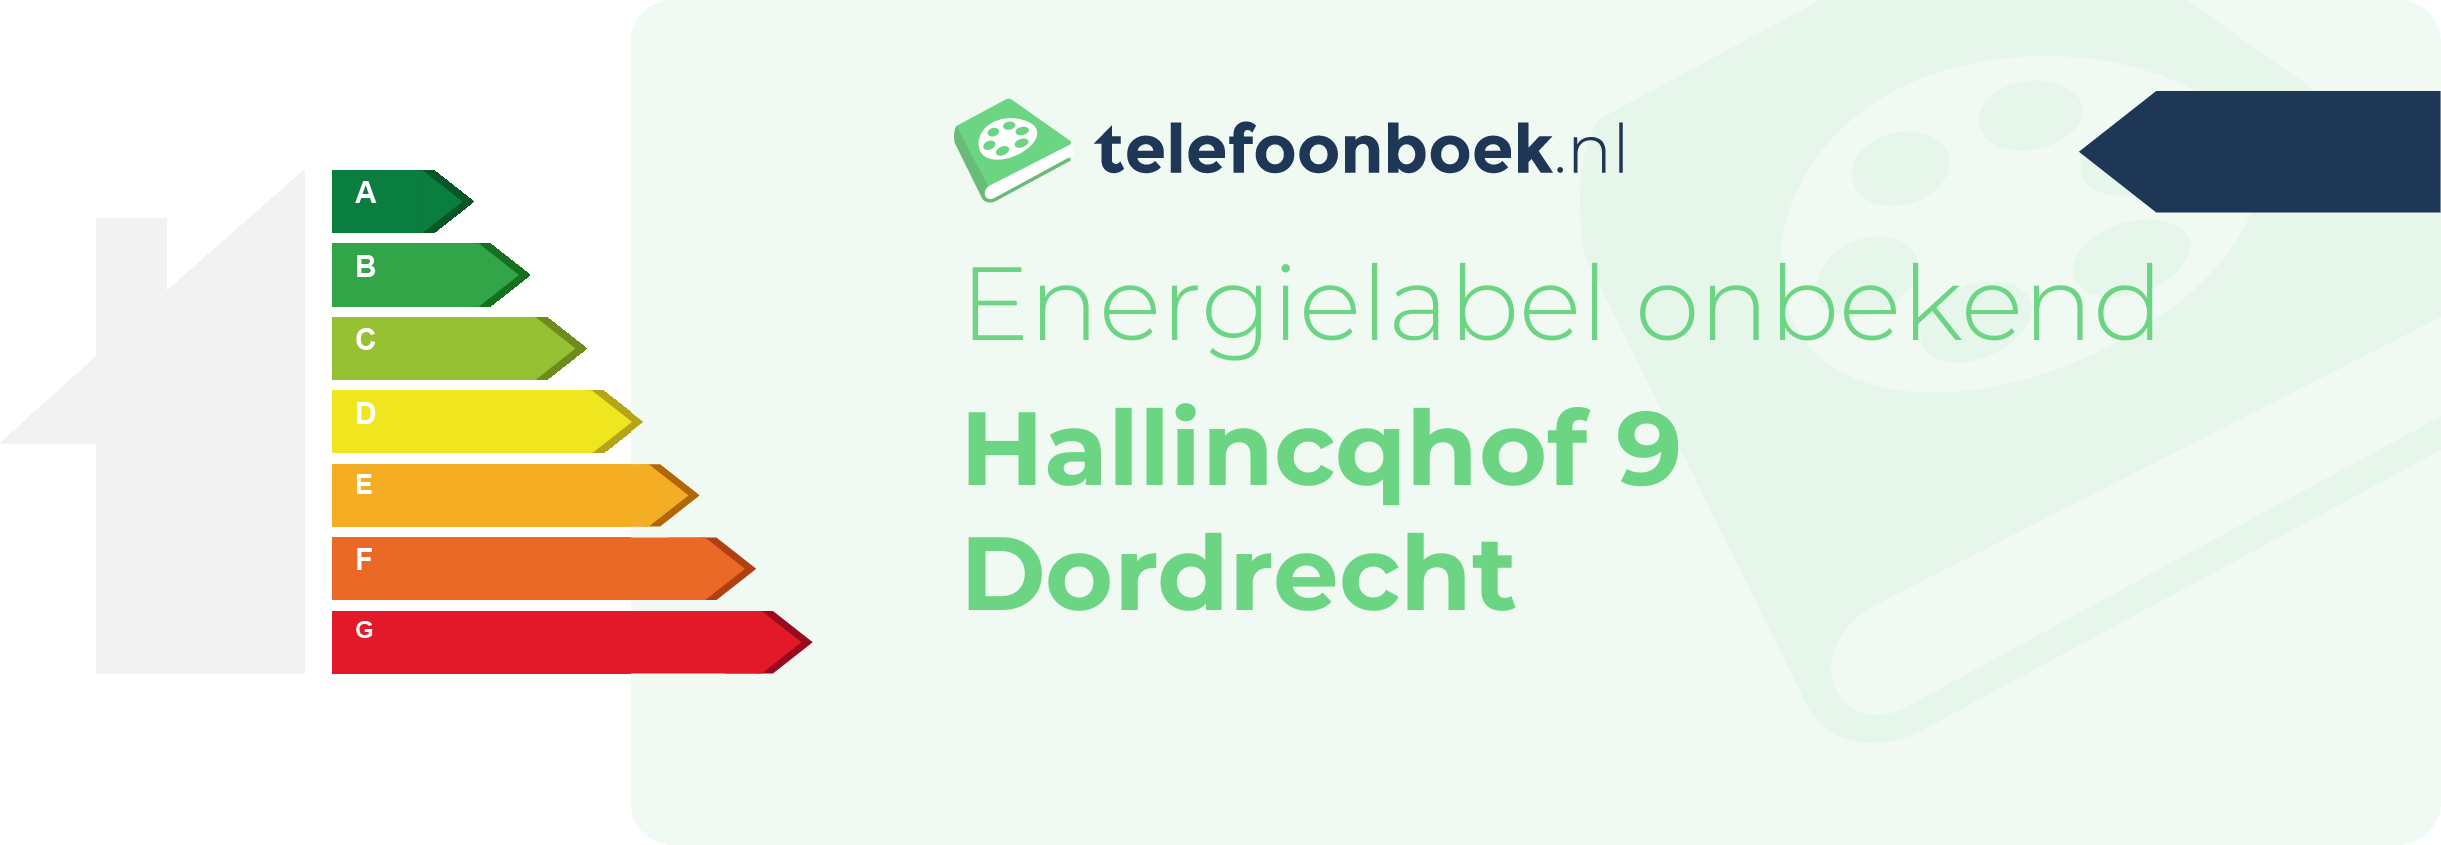 Energielabel Hallincqhof 9 Dordrecht